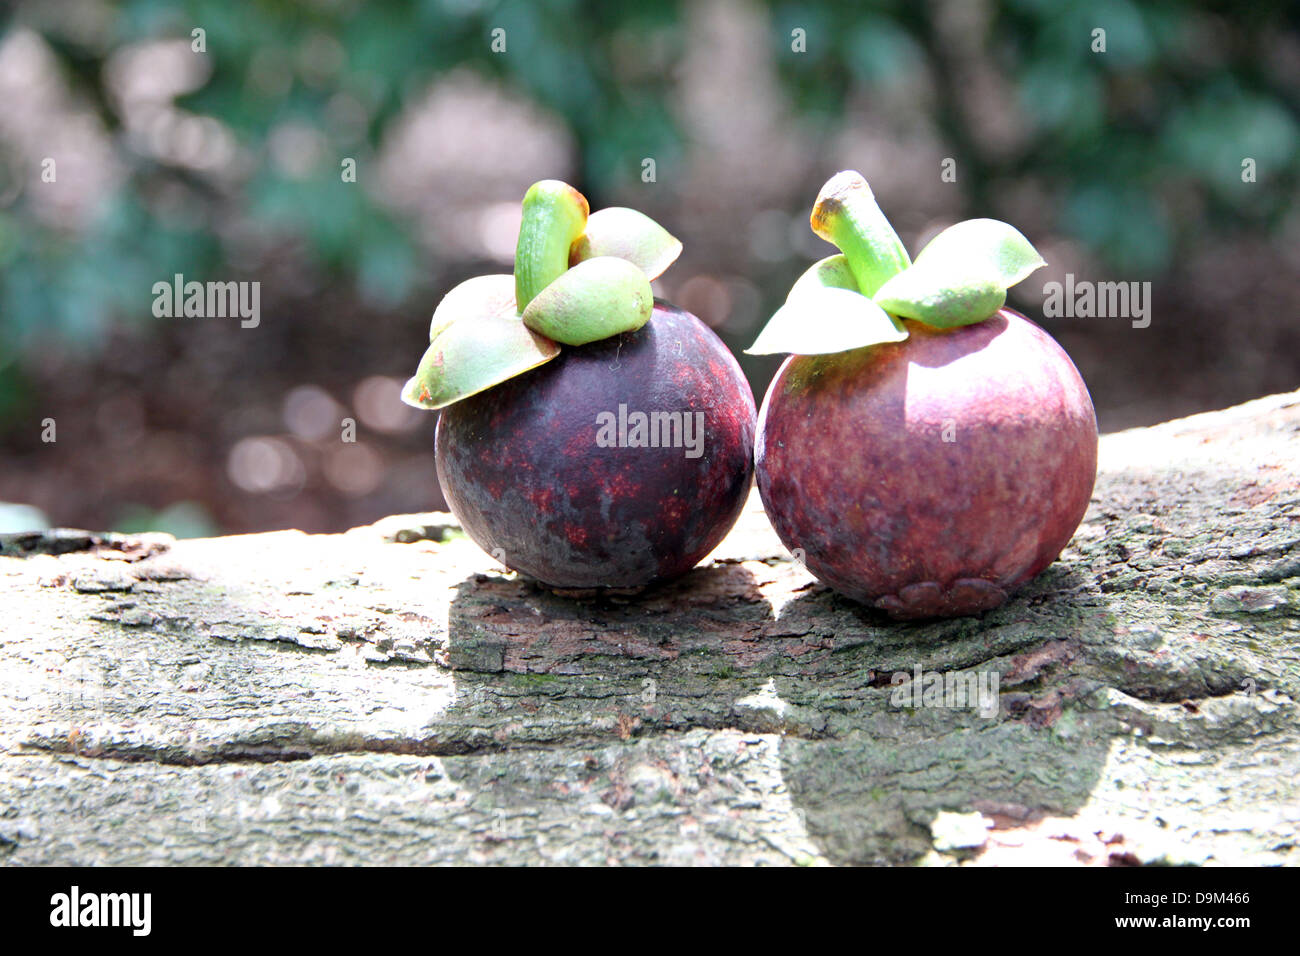 Le mangoustan est un fruit qui a un goût sucré,fruits domestiques en Thaïlande. Banque D'Images